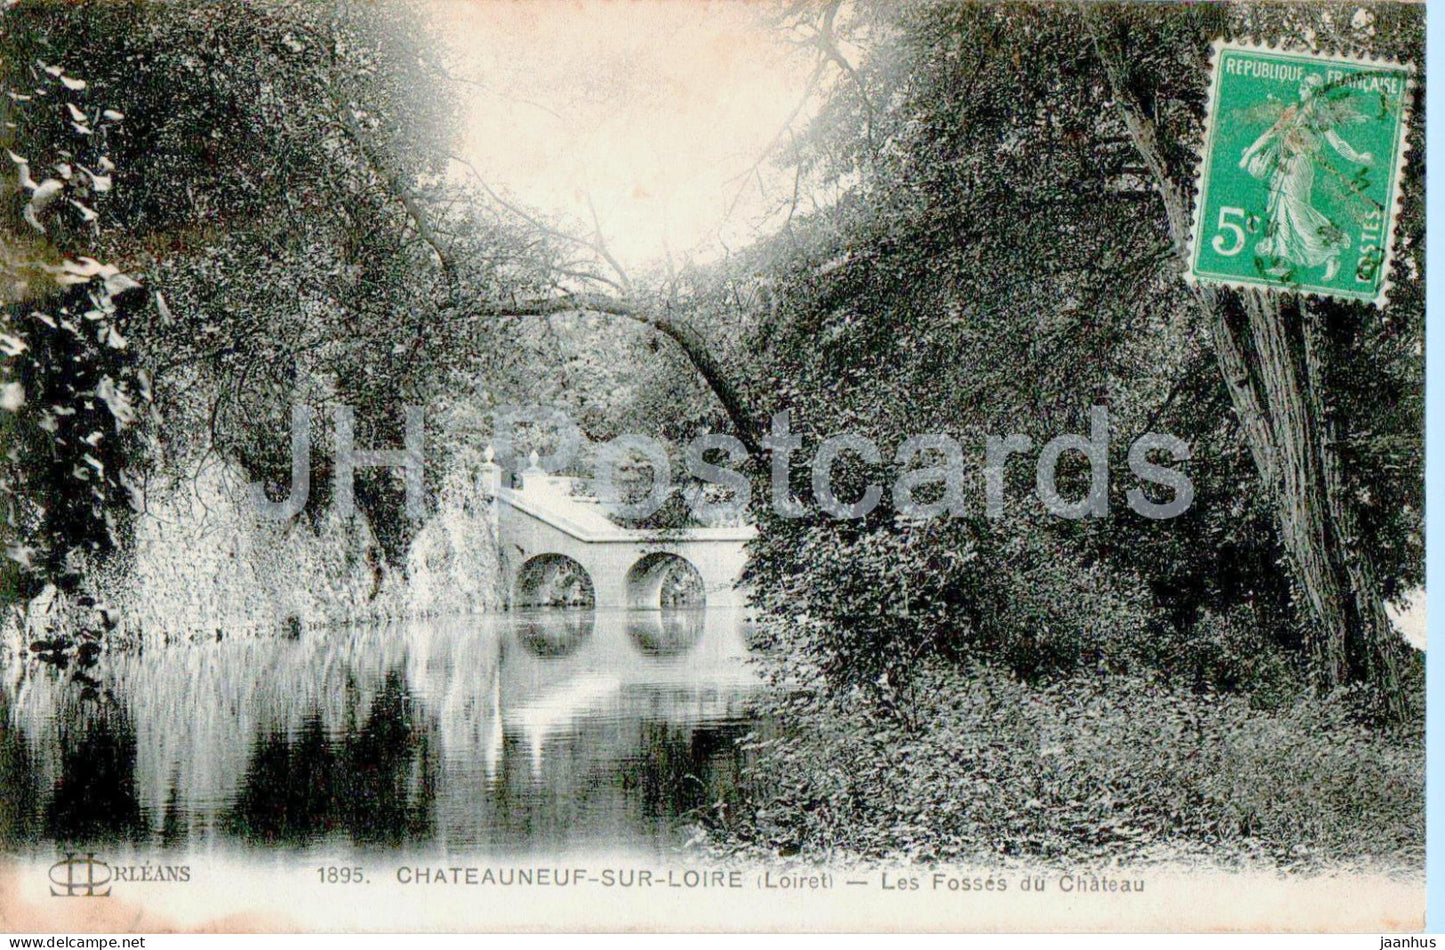 Chateauneuf sur Loire - Les Fosses du Chateau - 1895 - old postcard - 1913 - France - used - JH Postcards